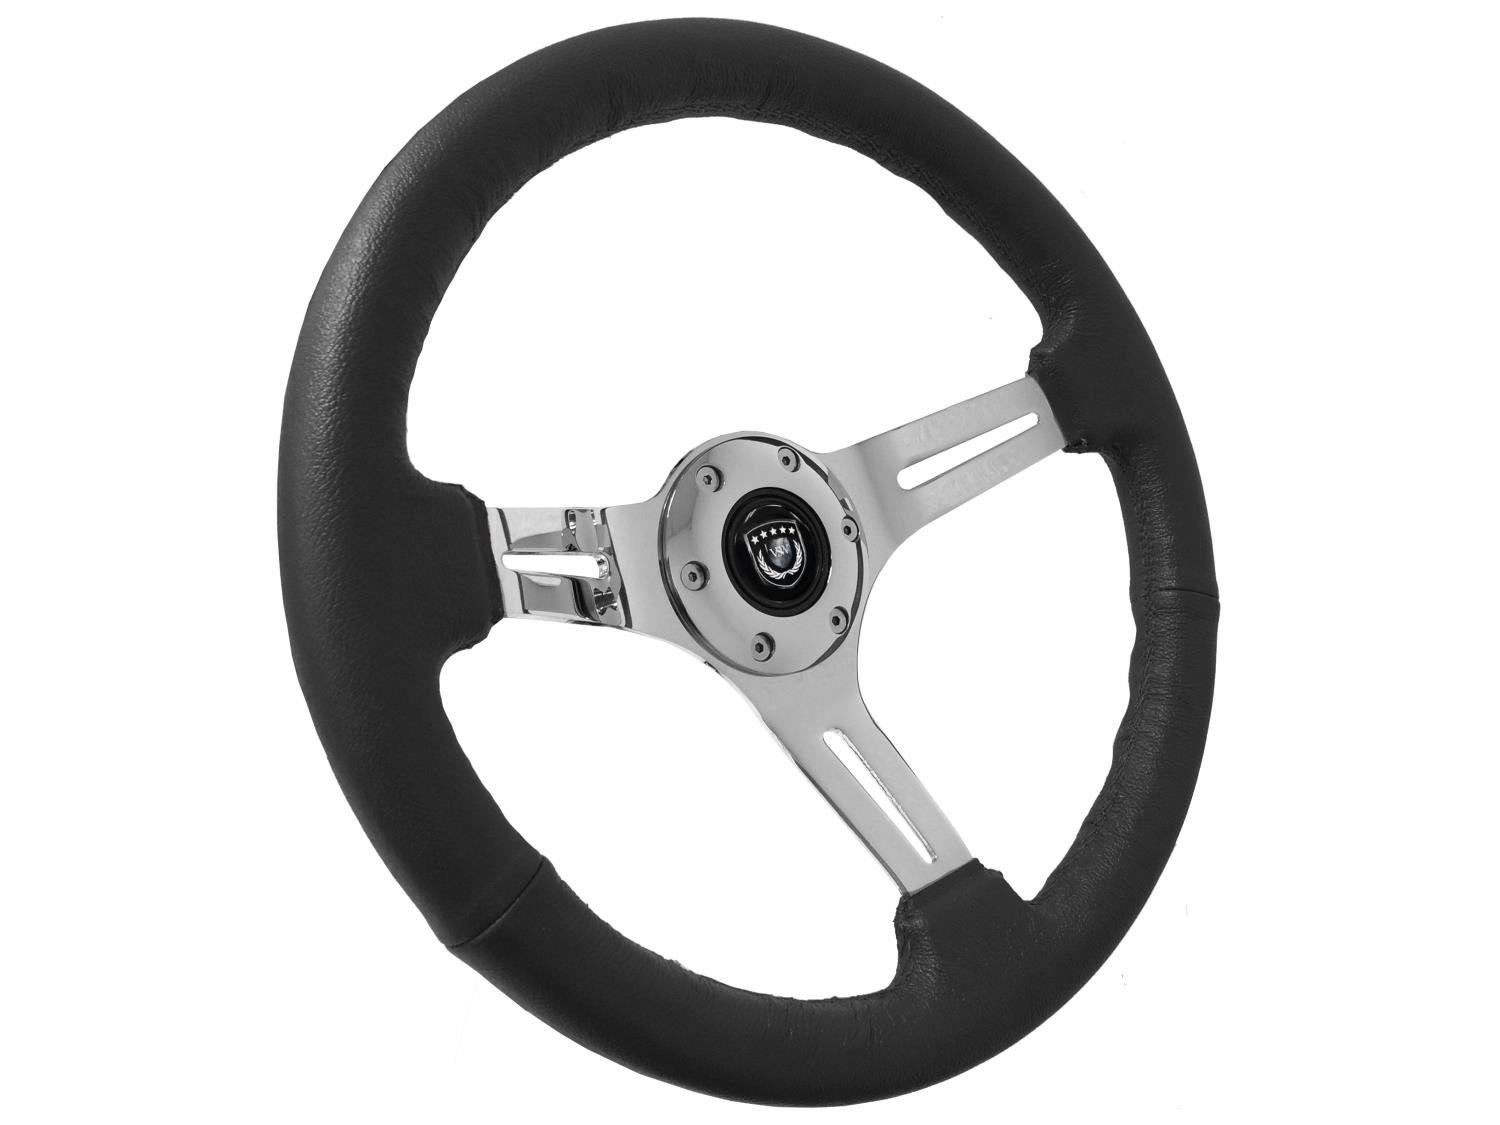 S6 Sport Steering Wheel, 14 in. Diameter, Premium Black Leather Grip